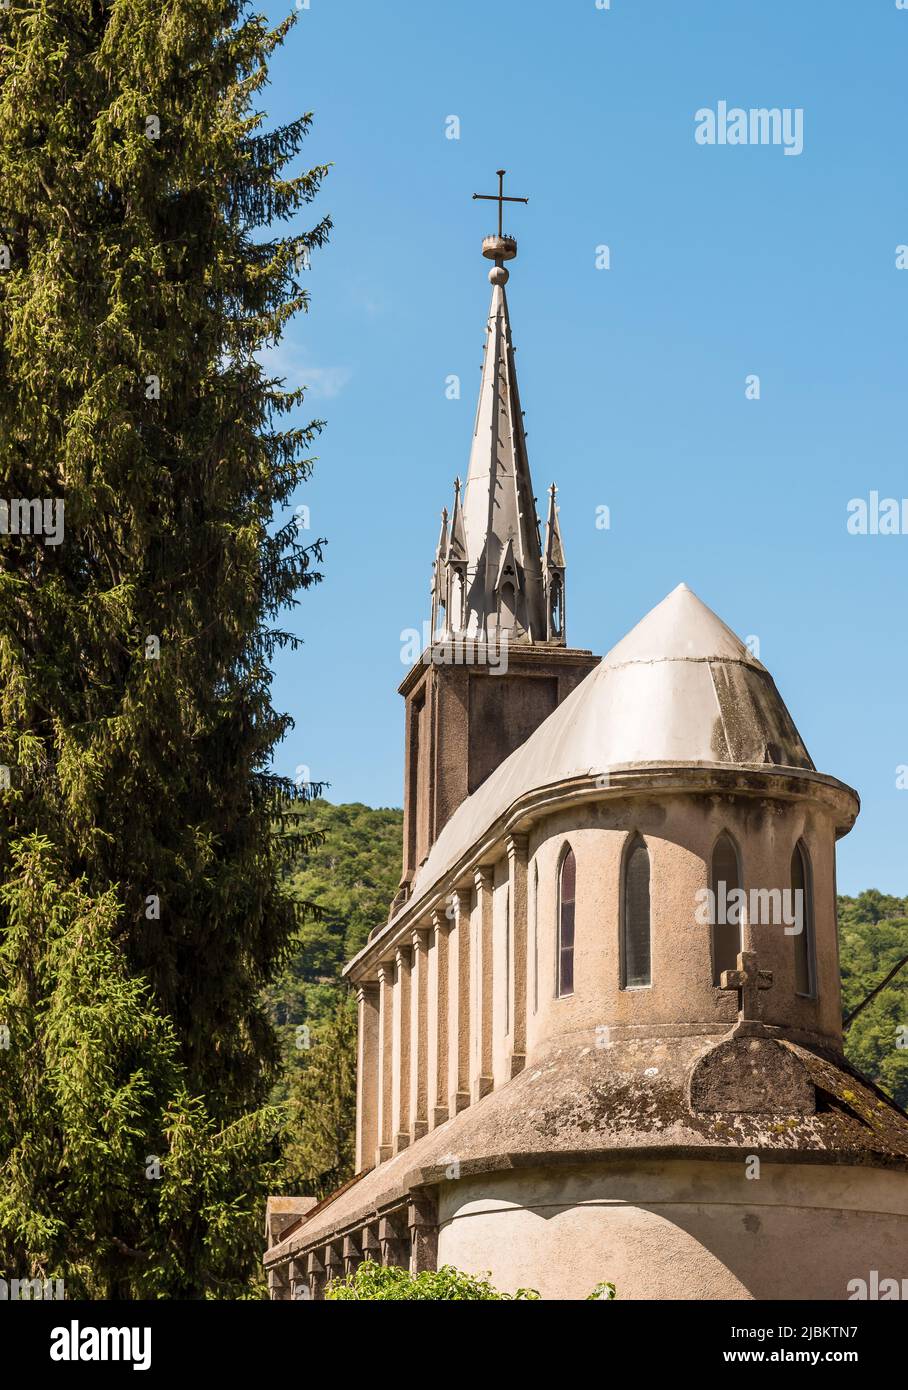 Reproducción de la cueva de Lourdes y el Santuario frente a la Abadía de Ganna, Valganna, provincia de Varese, Italia Foto de stock